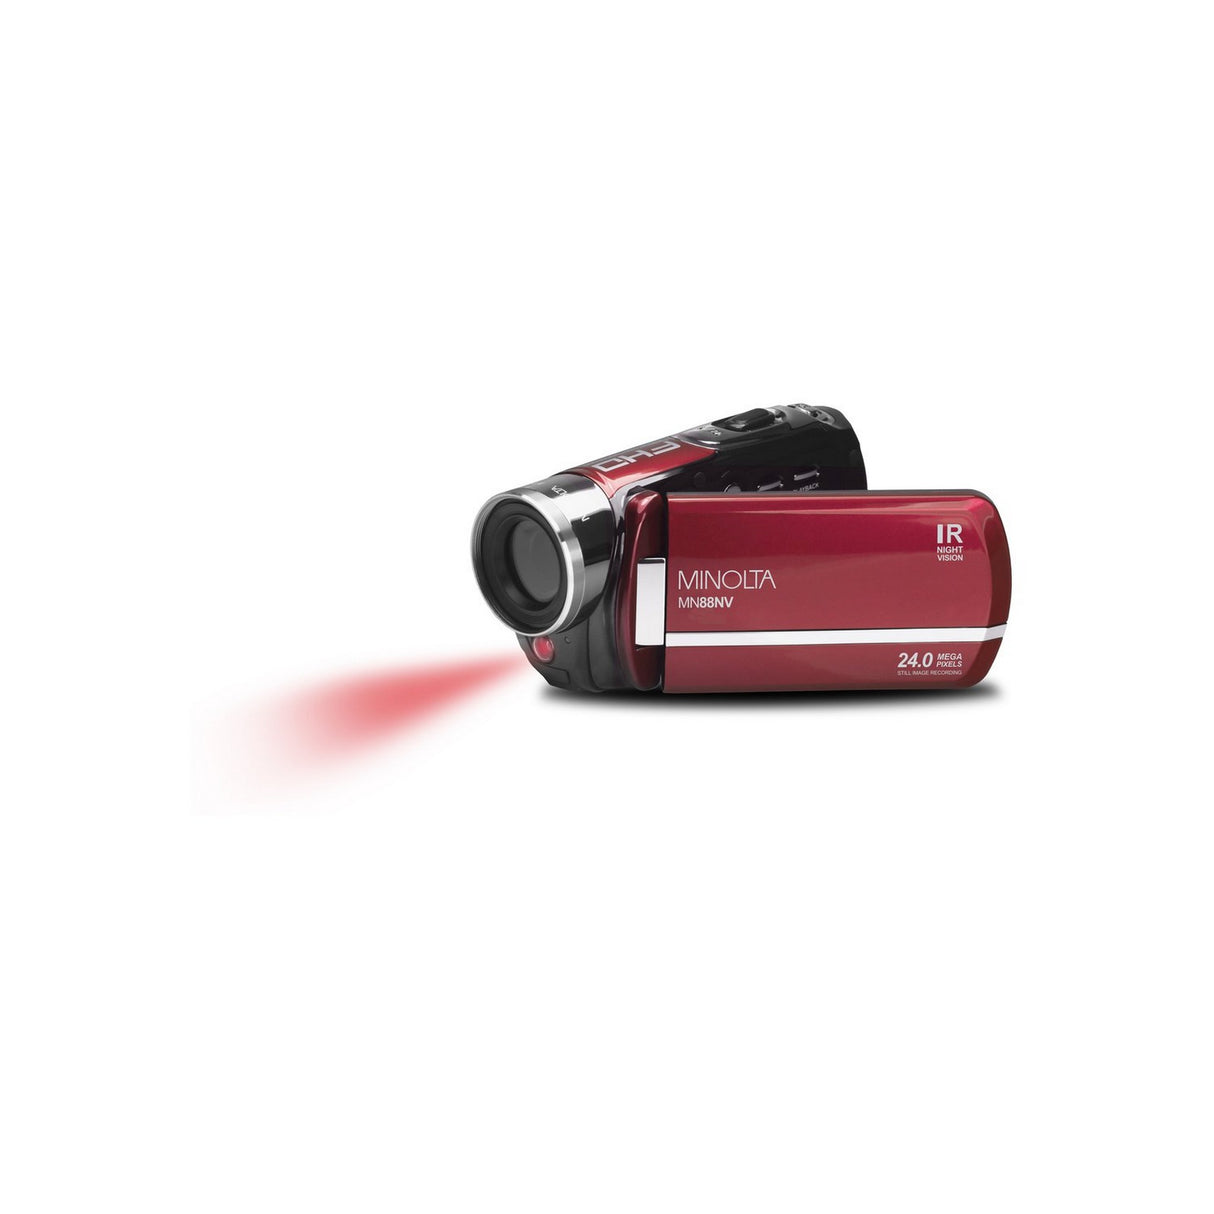 Minolta MN88NV 1080p HD 24 MP Night Vision Digital Camcorder, Red